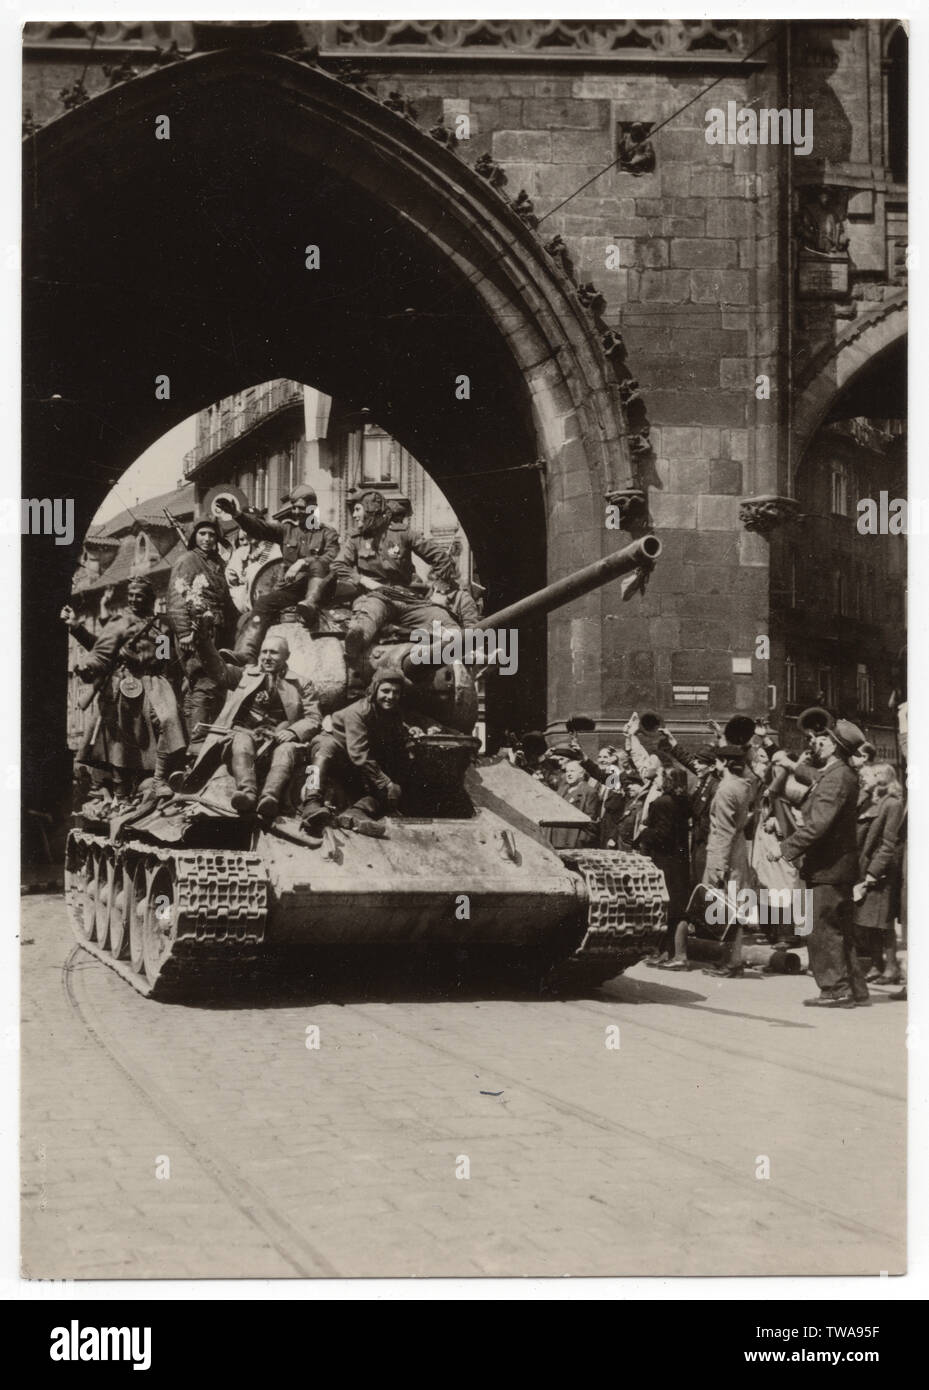 Armata rossa serbatoio T-34 vicino alla Torre delle Polveri (Prašná brána) a Praga, Cecoslovacchia, il 9 maggio 1945. Fotografia in bianco e nero pubblicato in cecoslovacco cartolina vintage rilasciati nel 1955. La cortesia dell'Azoor Collezione Cartoline. Foto Stock